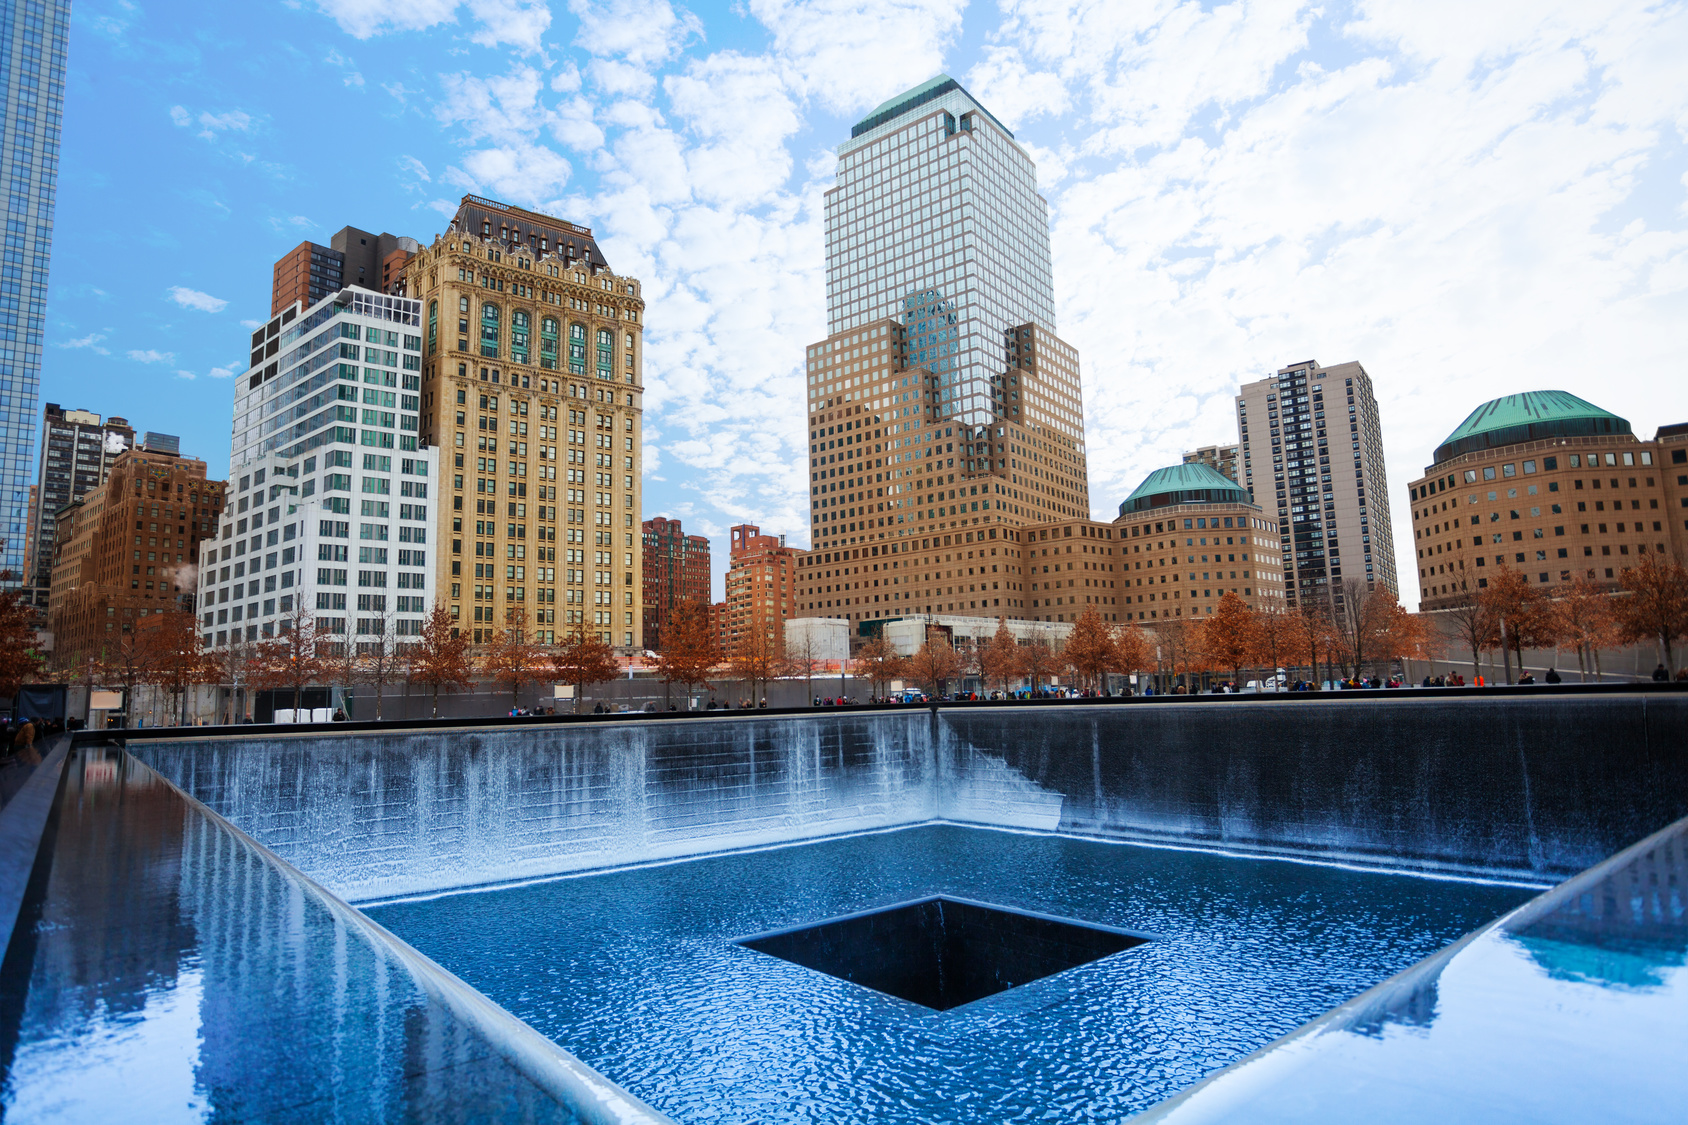 4. Memorial do 11 de Setembro